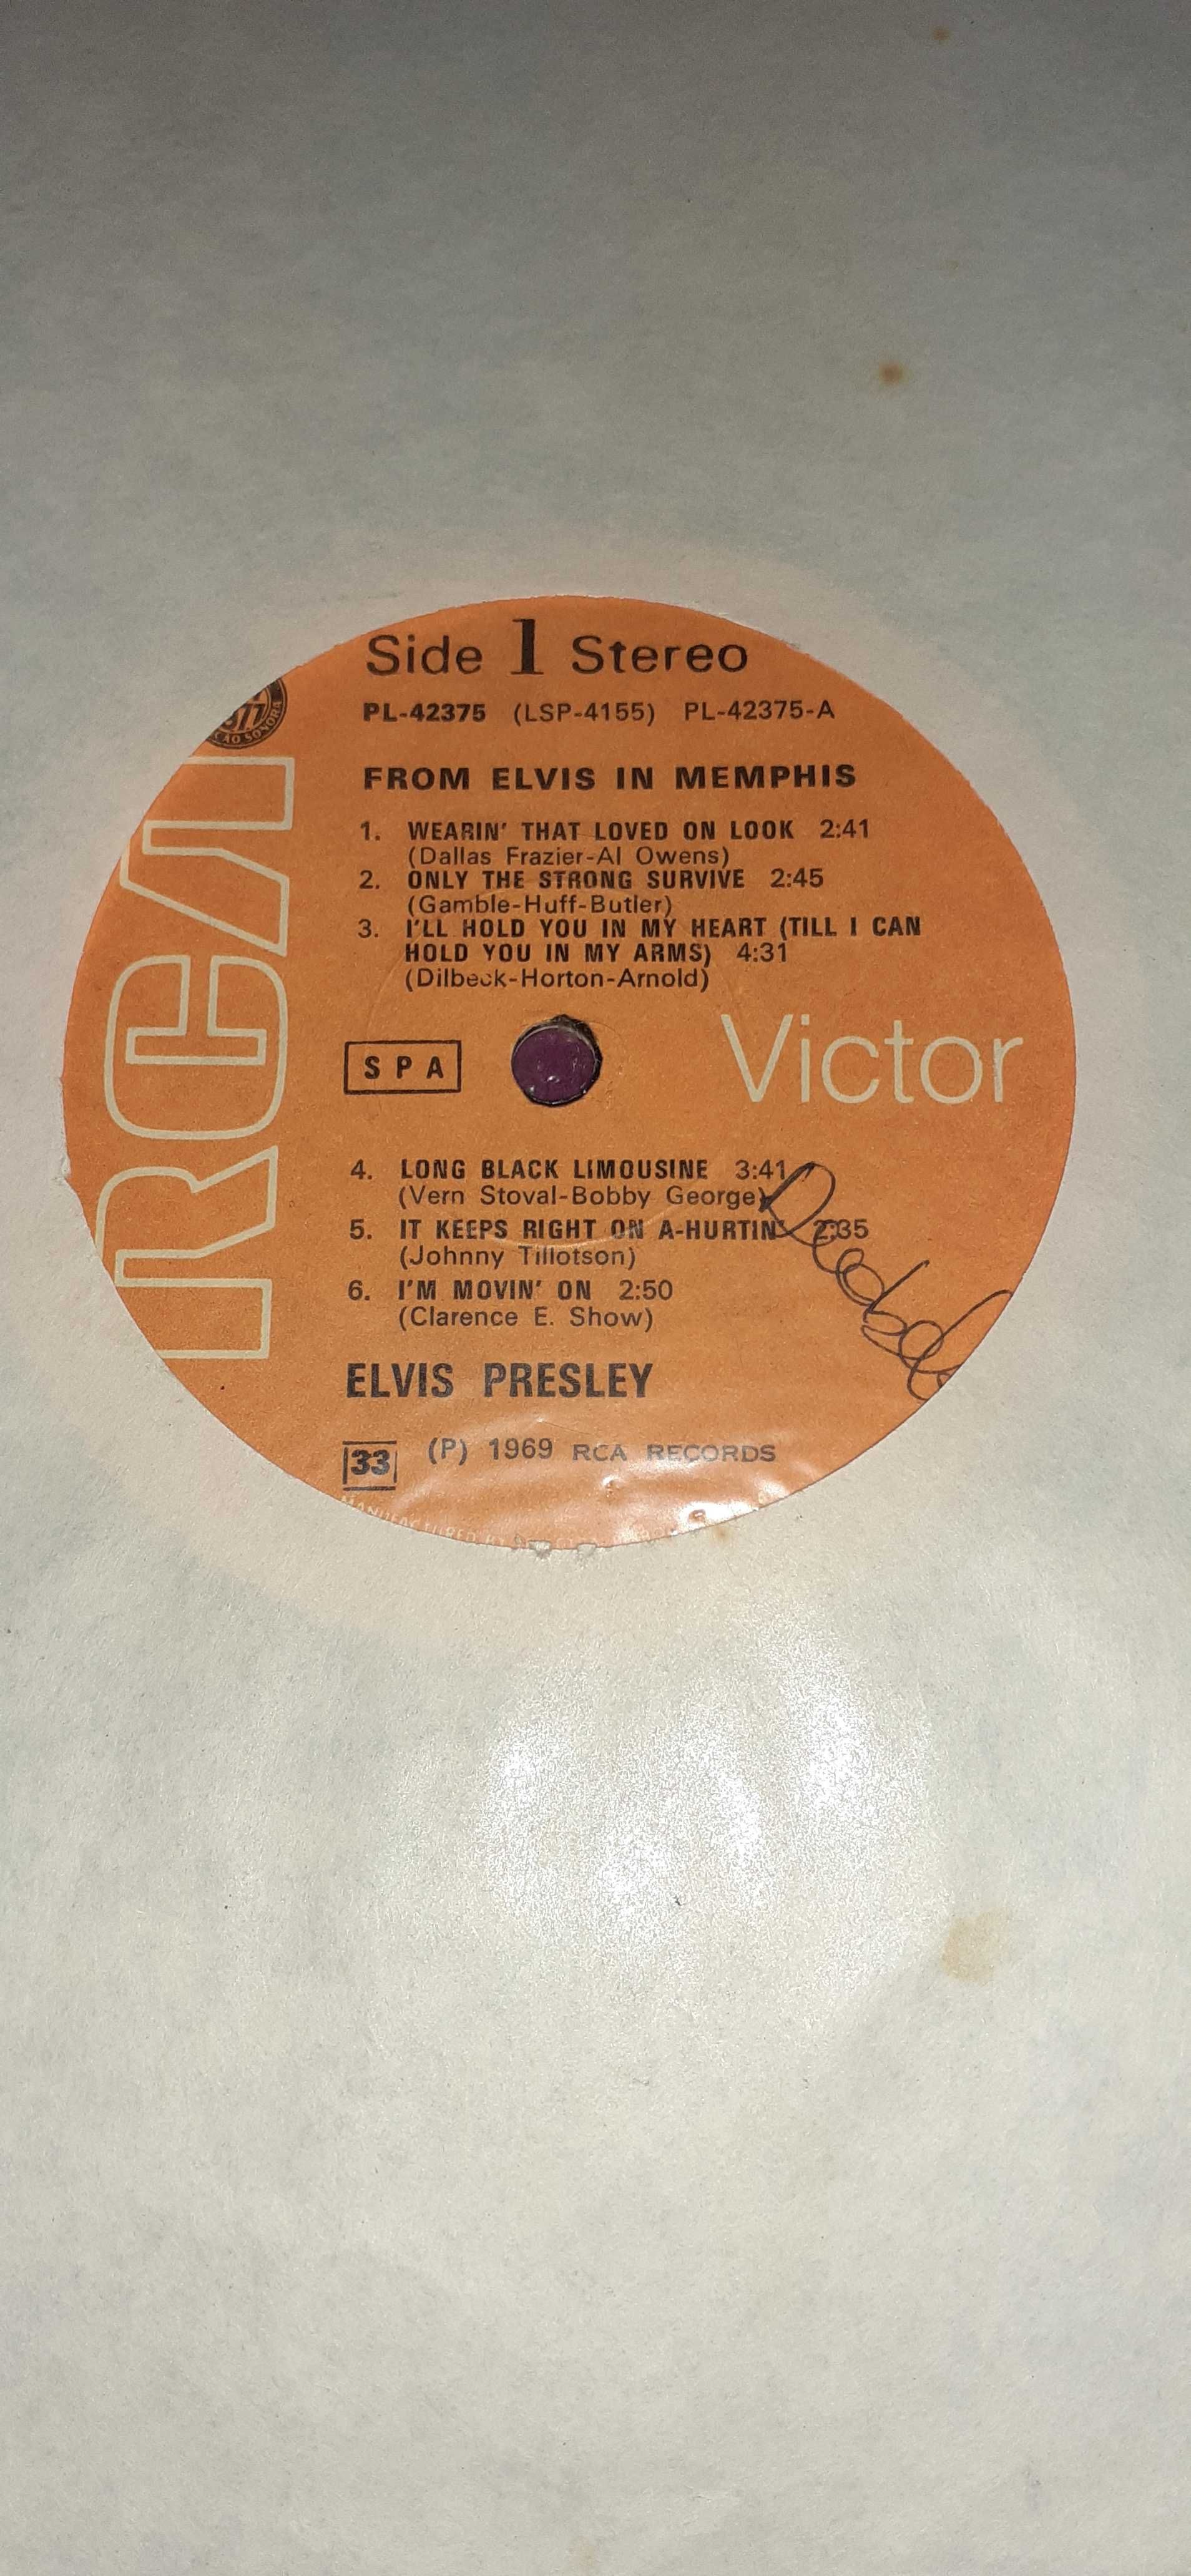 Comjunto 3 Discos Vinil "Elvis Presley"